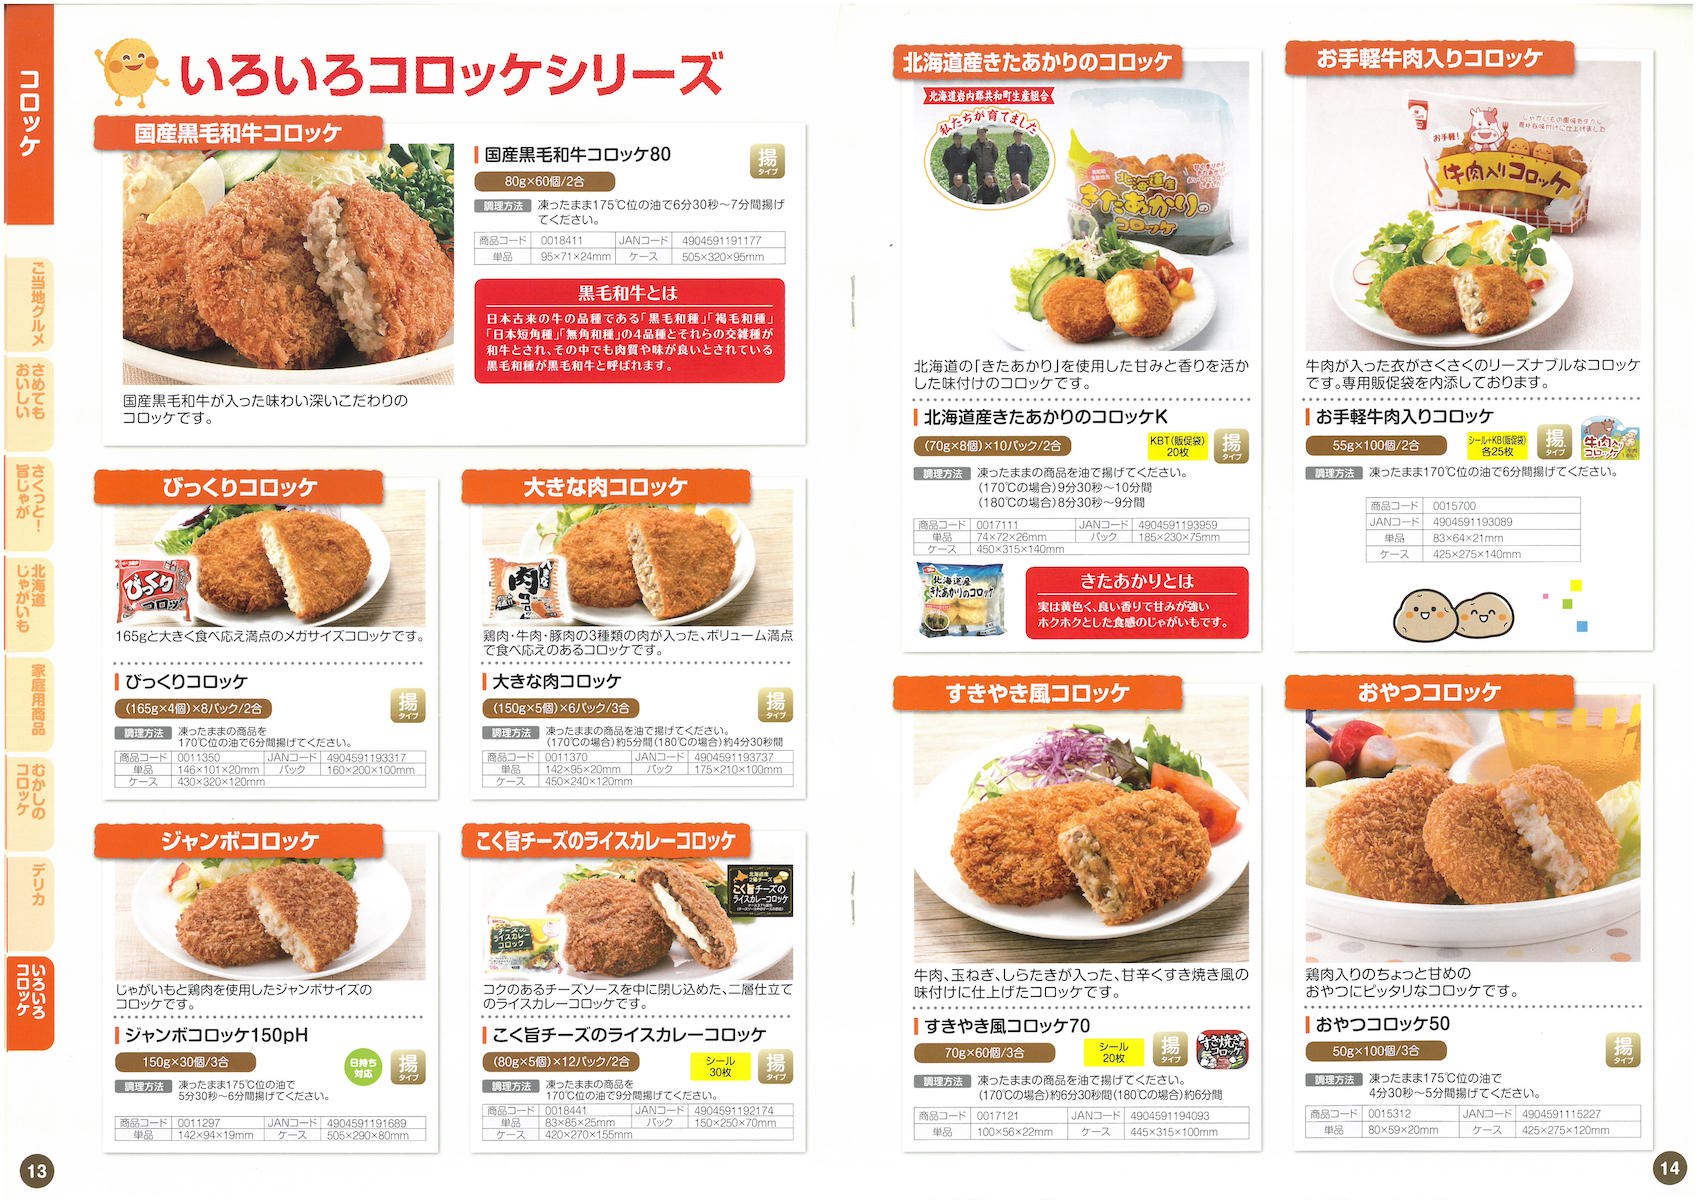 味のちぬや 総合カタログ2019 AJINOCHINUYA | 冷凍食品カタログ.com